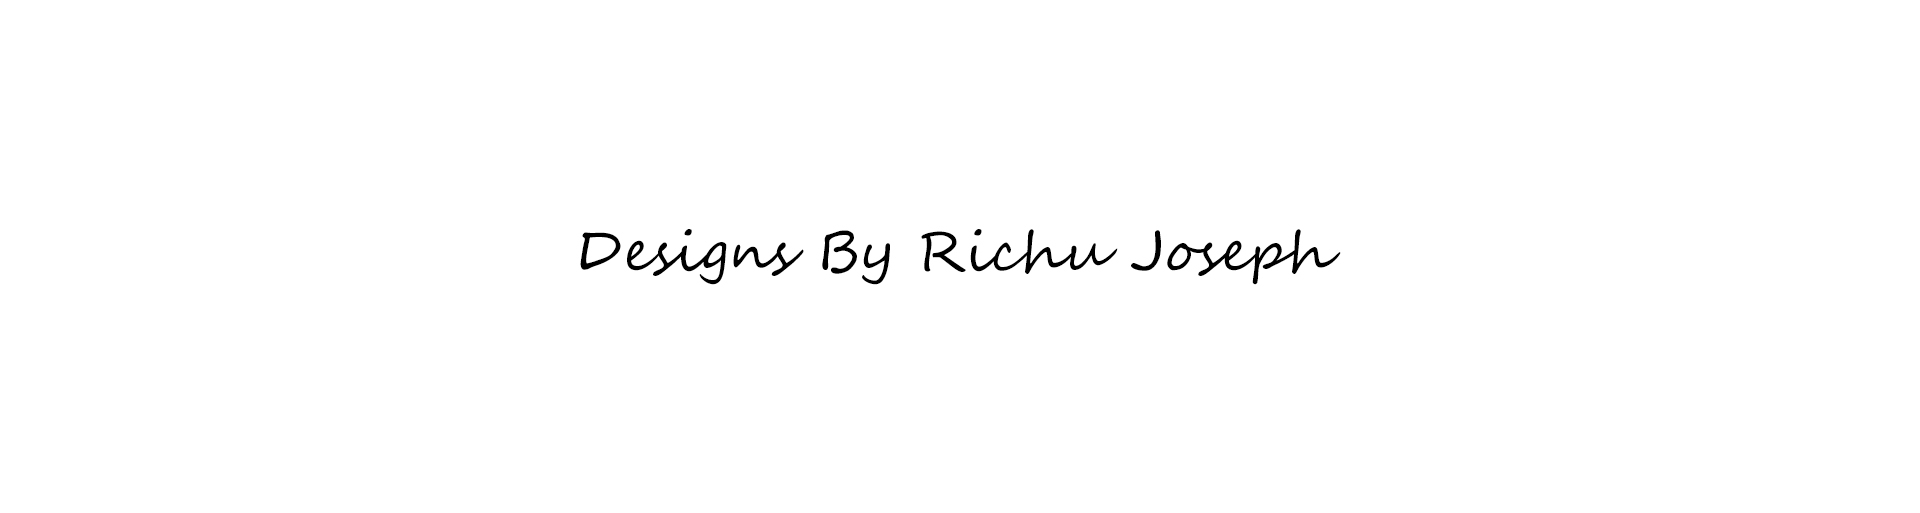 Richu Joseph